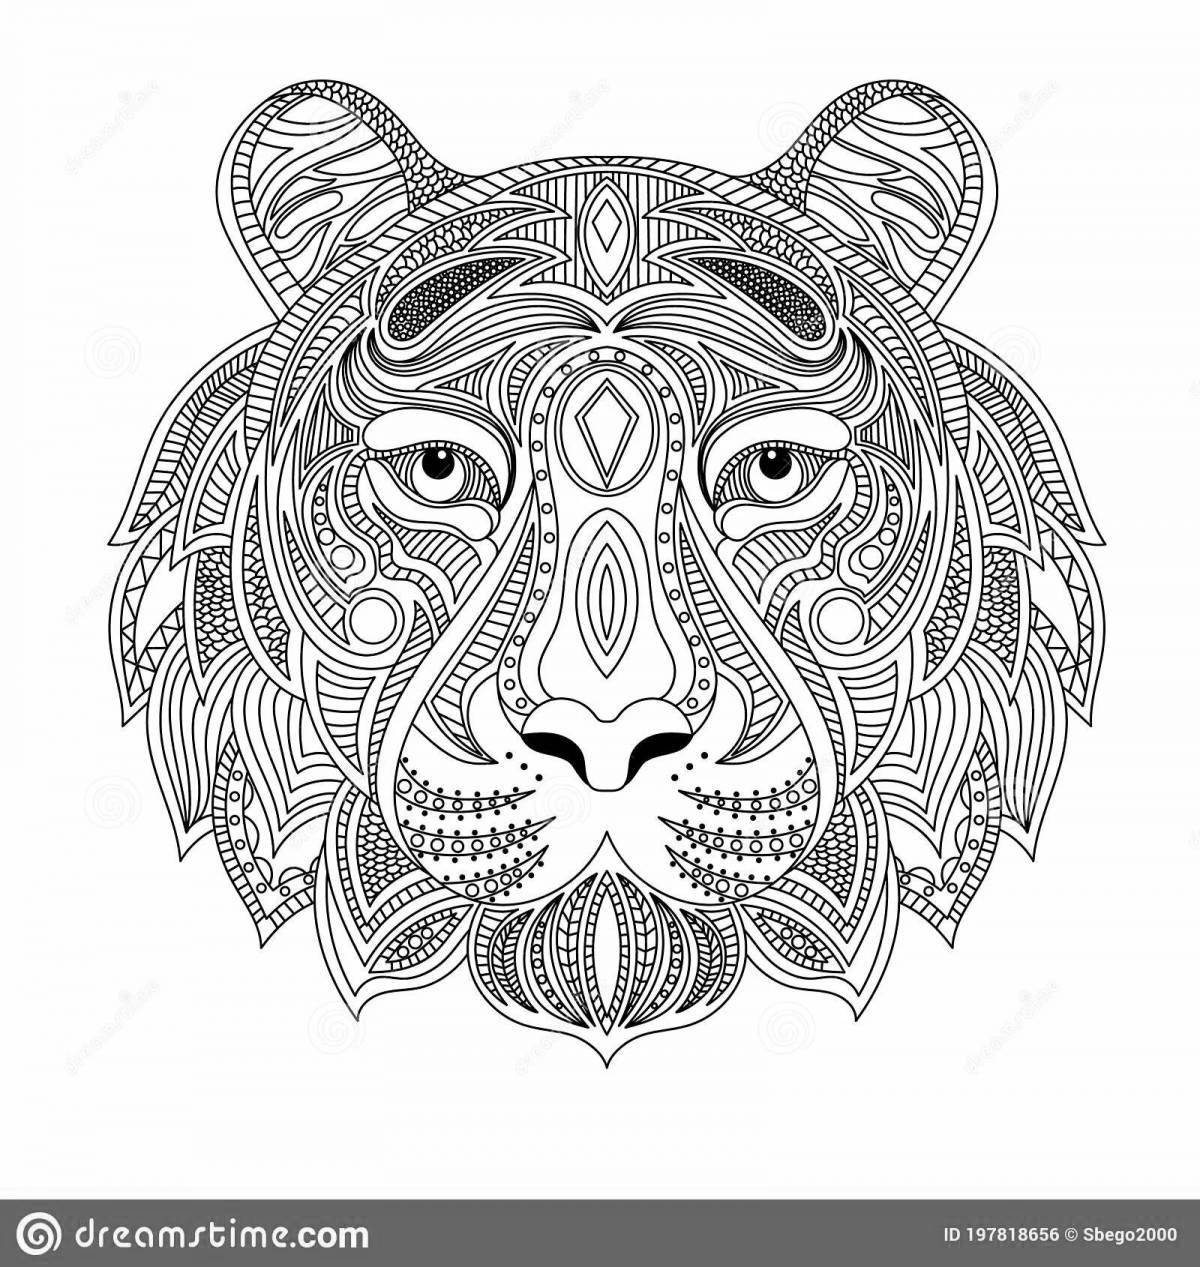 Majestic coloring book antistress tiger cub